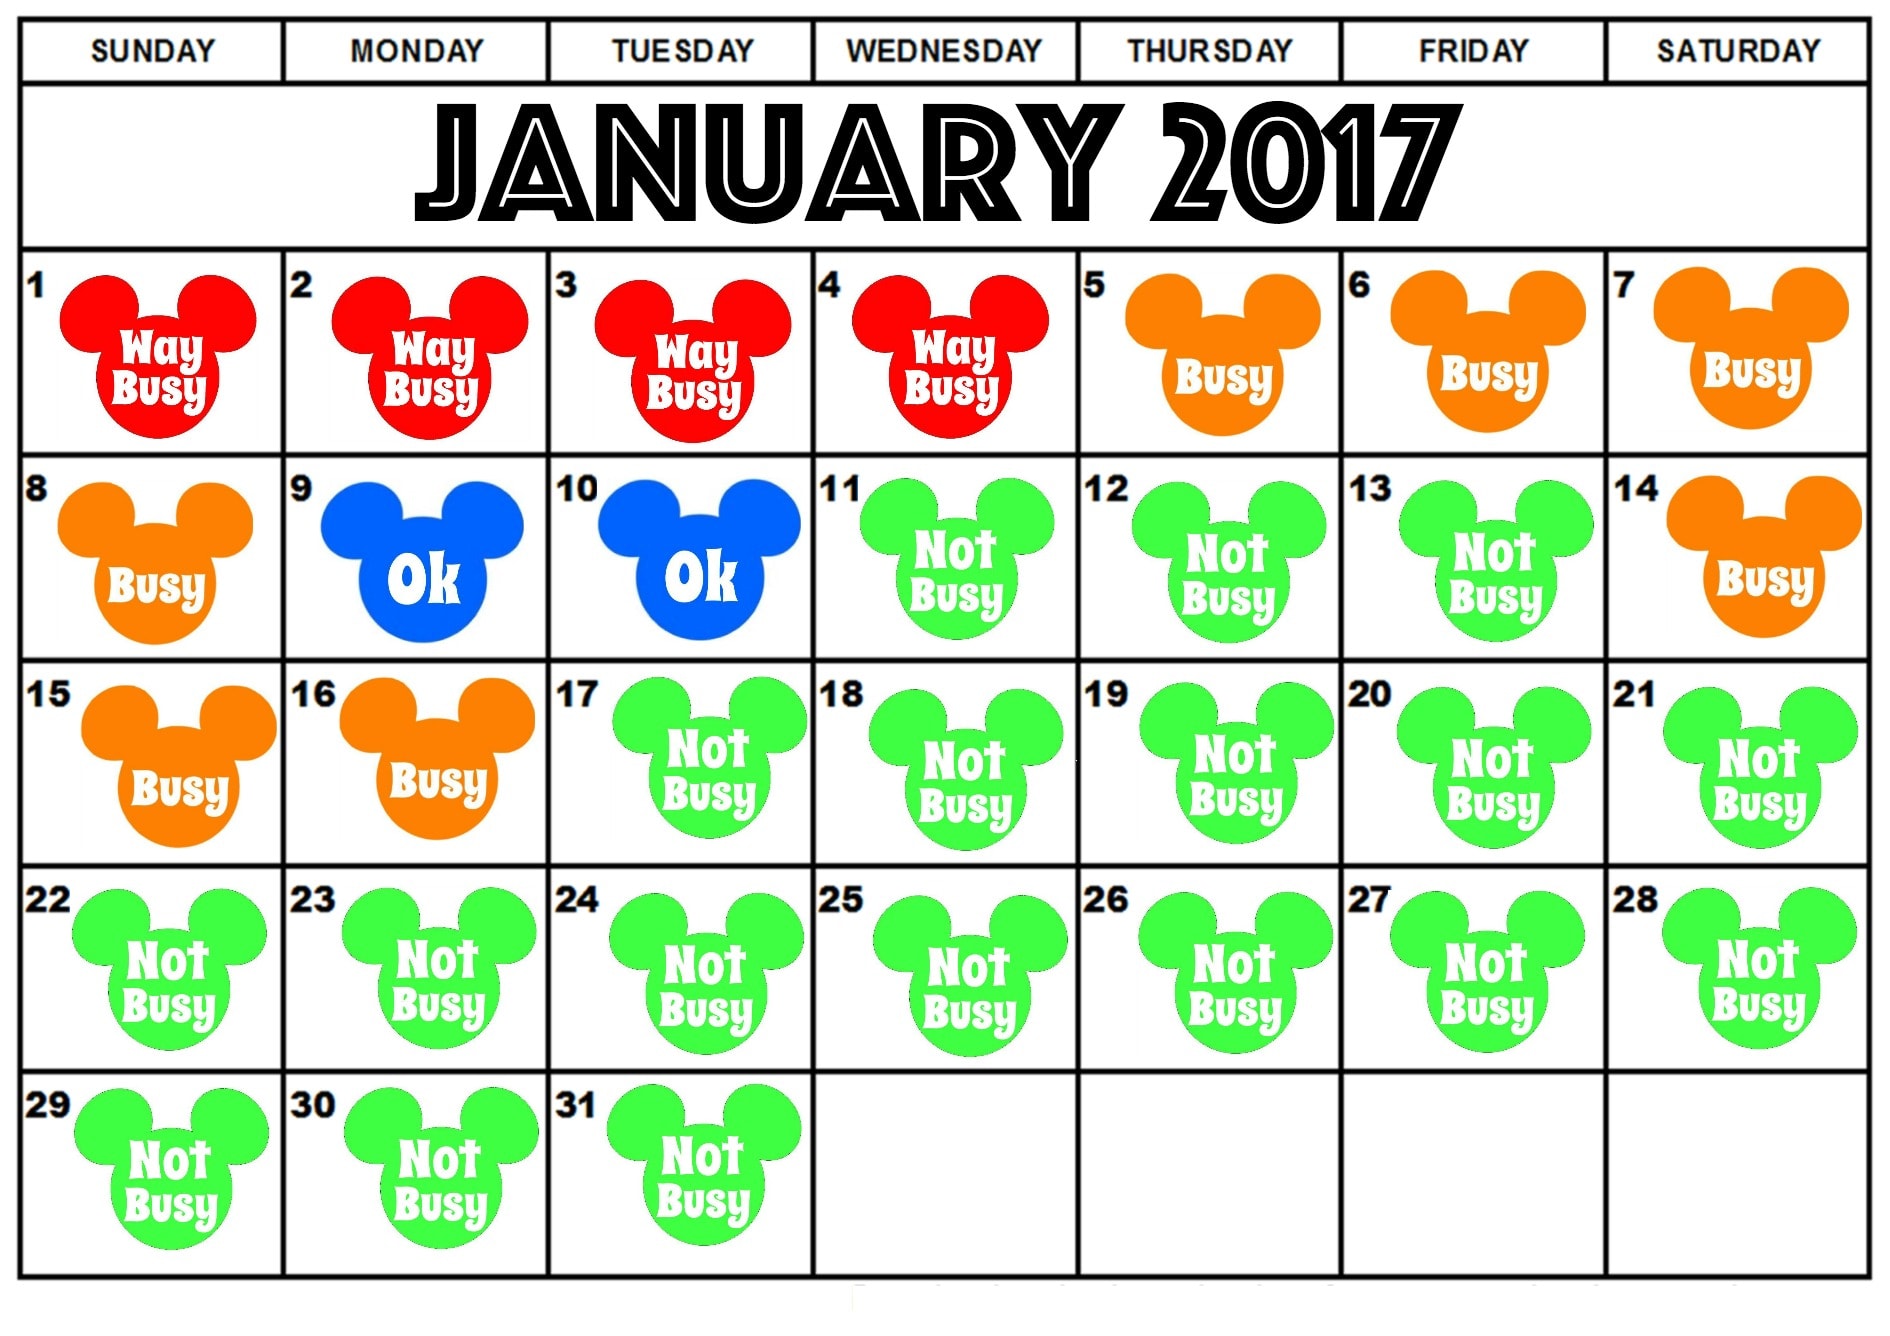 Best Days to Visit Disney World in 2017